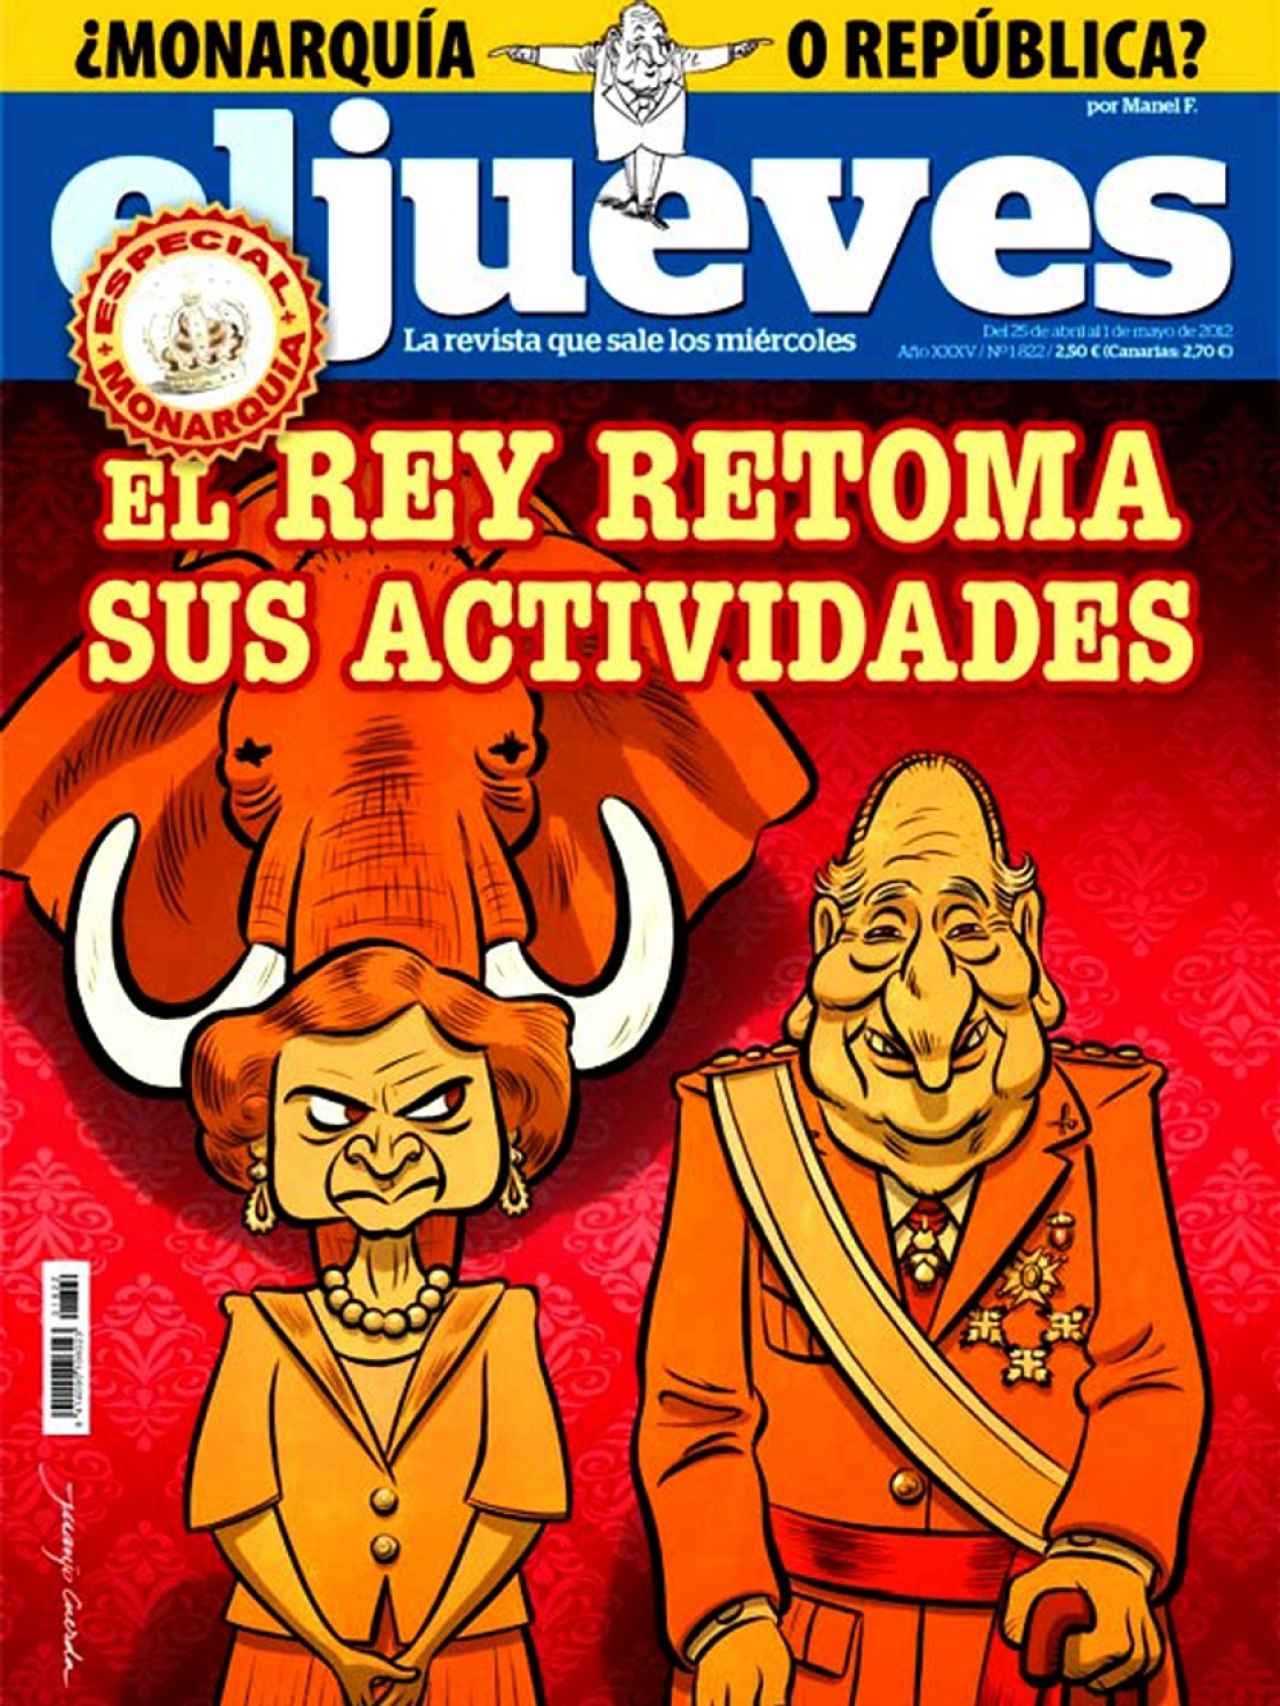 Portada Revista El Jueves - 25-04-2012 - 01-05-2012